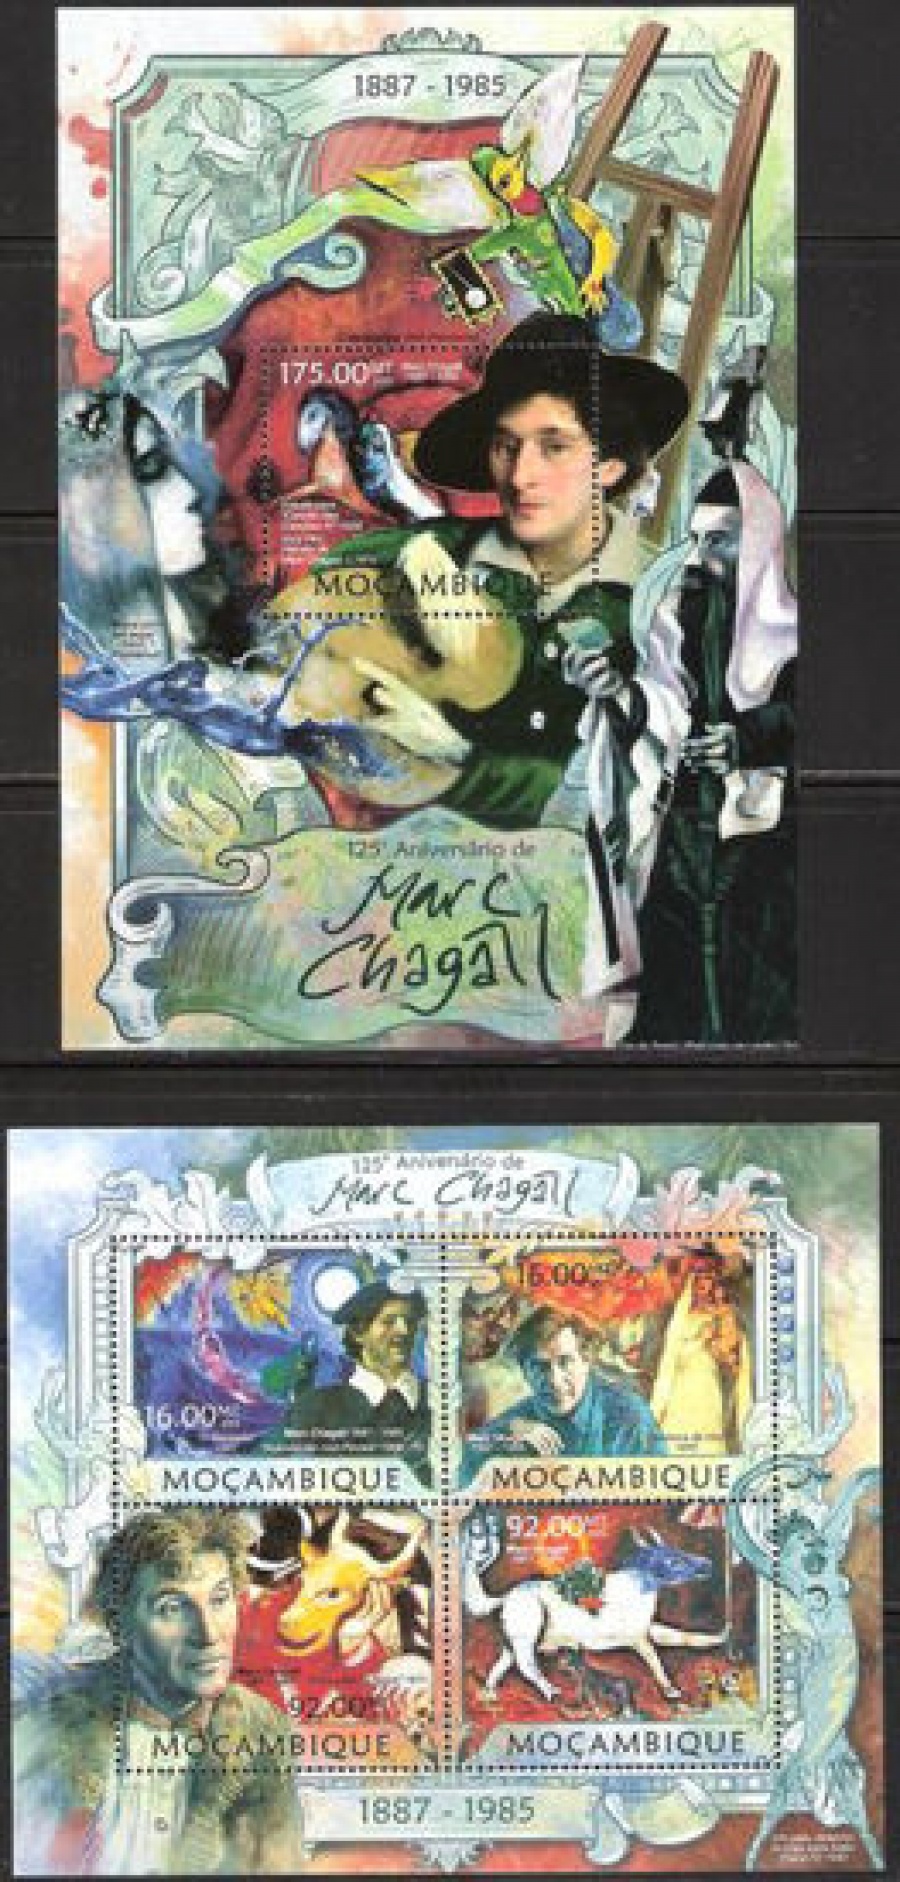 Почтовая марка НК. Мозамбик. Михель - Шагал(2013-92-16 и ПБ ш175)